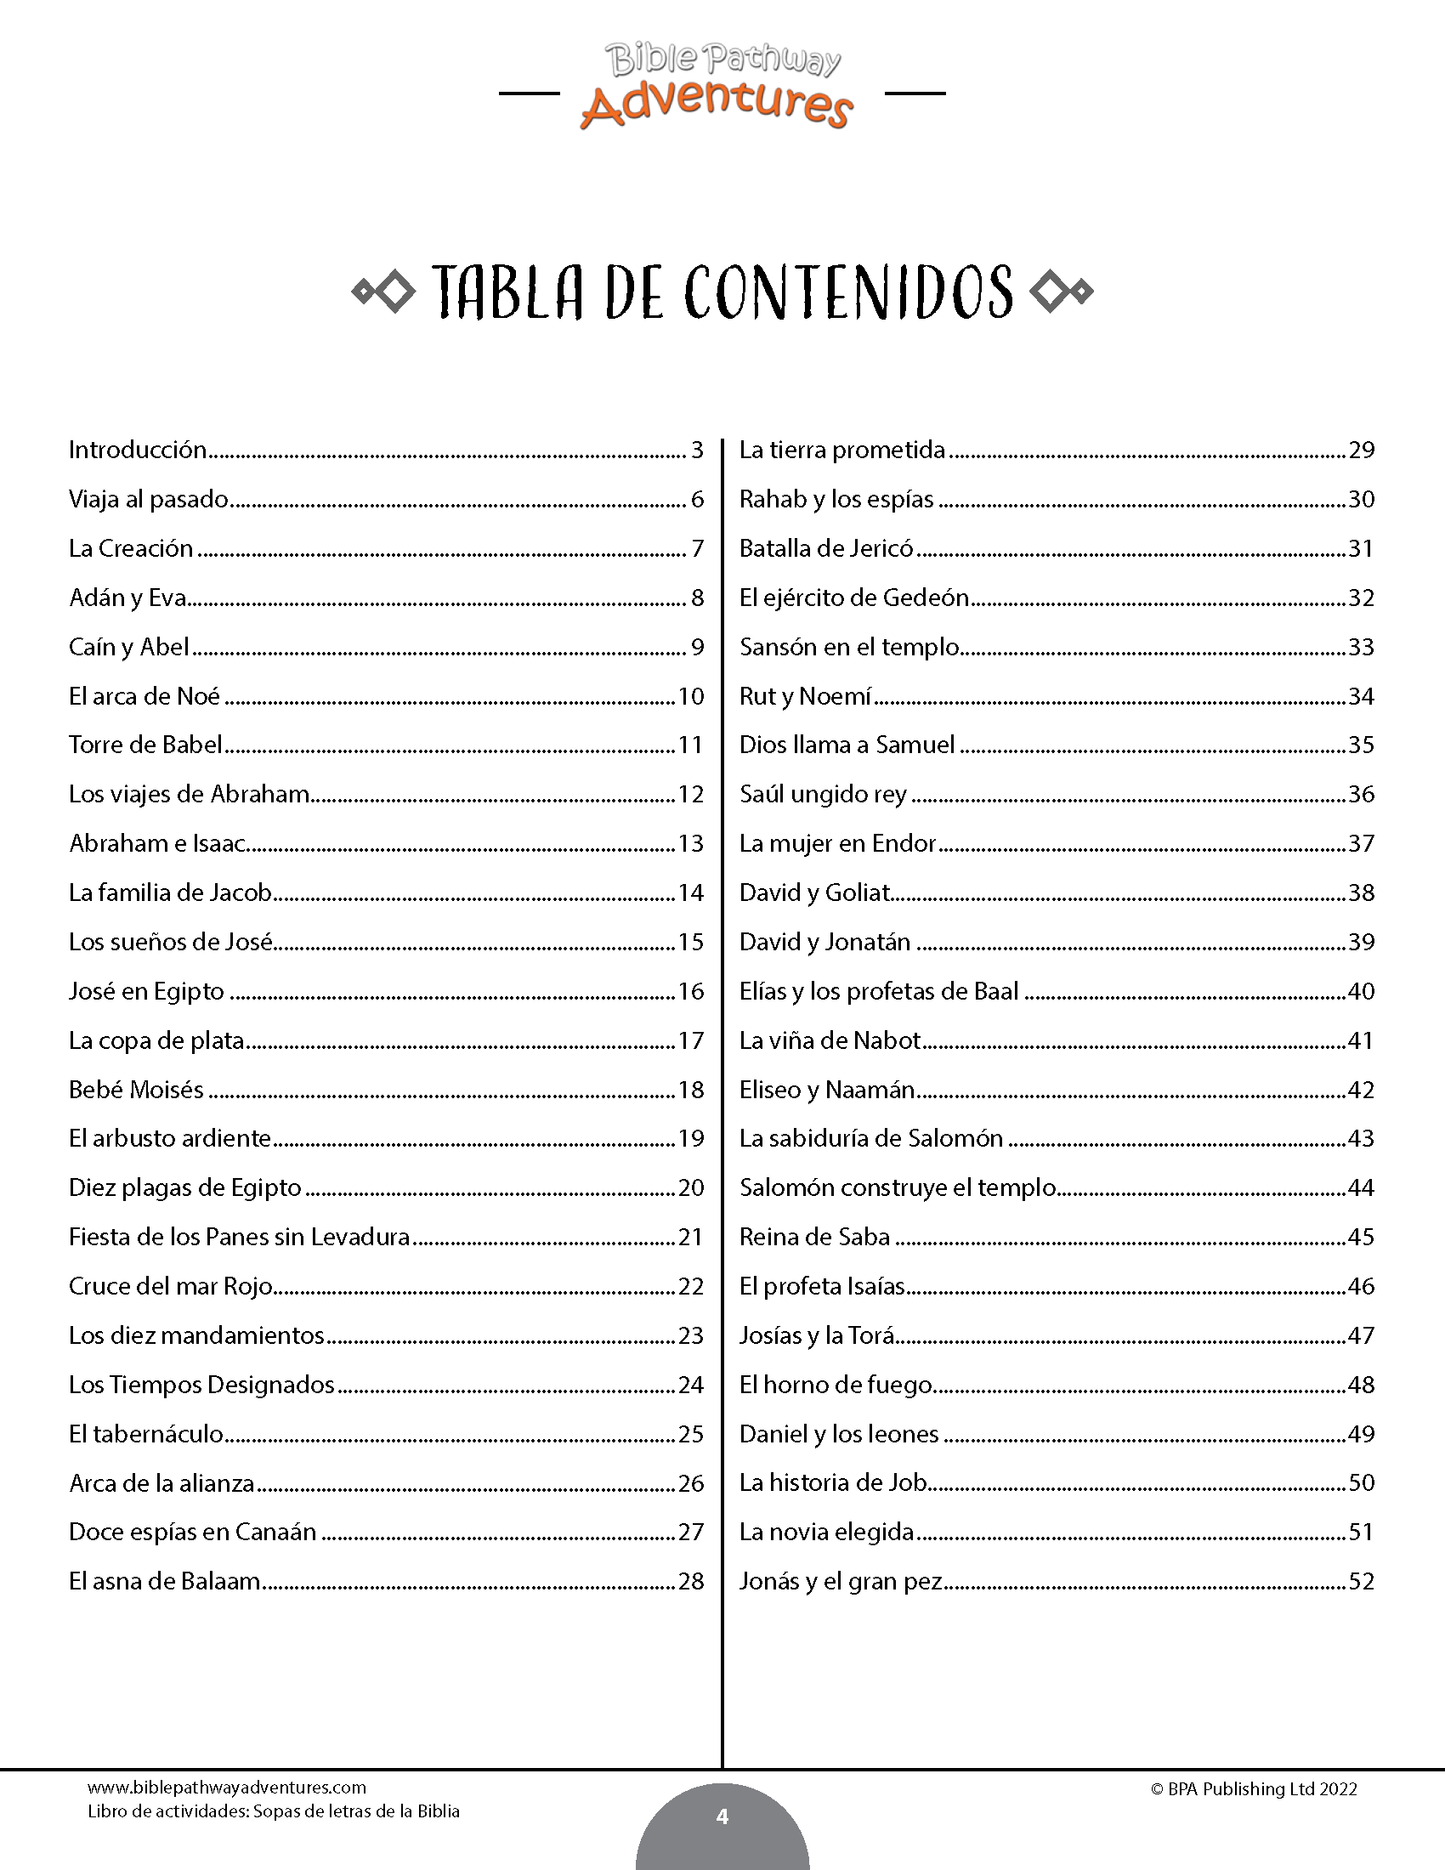 BUNDLE: Cuestionarios bíblicos y sopas de letras: Libros de actividades (paperback)